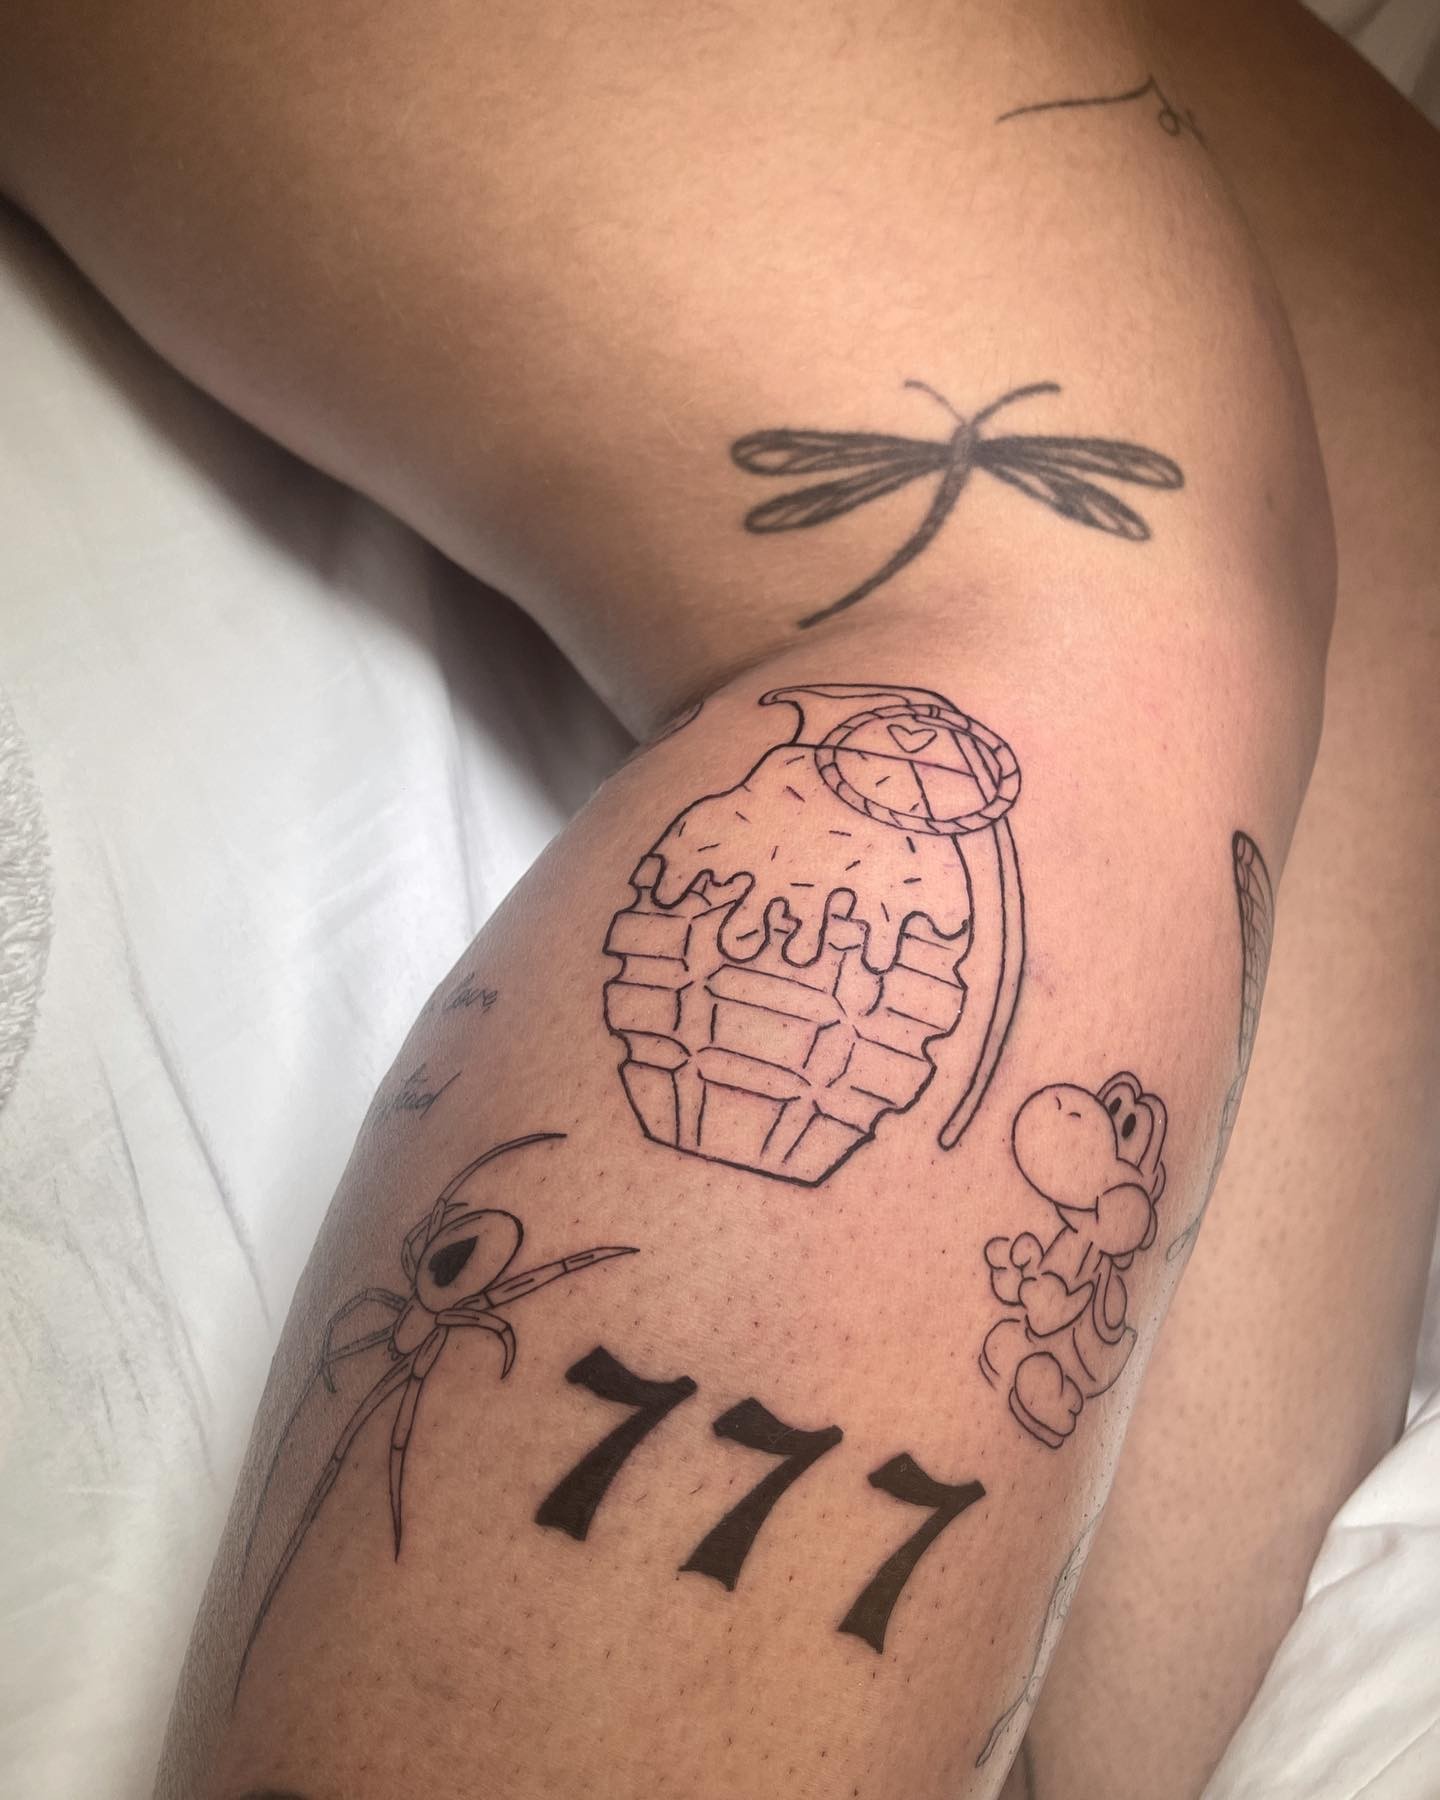 Rafaella Santos tatuou a perna — Foto: Reprodução/Instagram